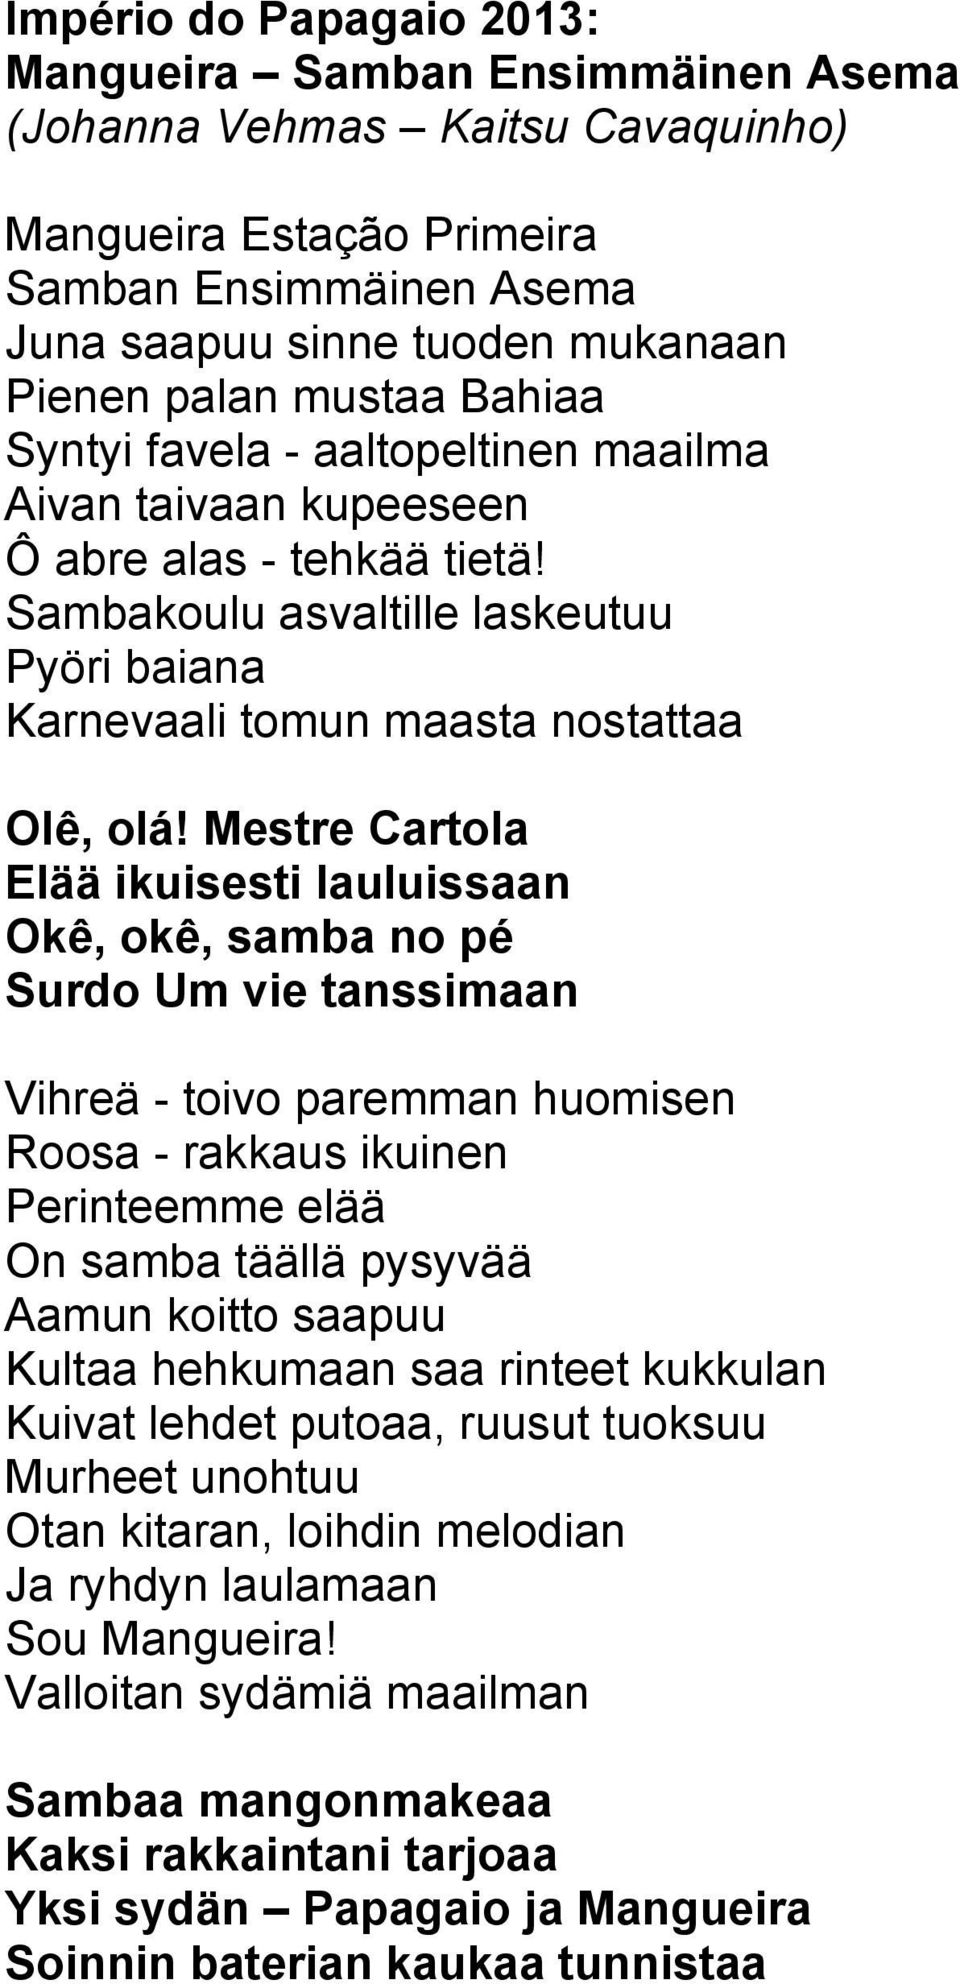 Mestre Cartola Elää ikuisesti lauluissaan Okê, okê, samba no pé Surdo Um vie tanssimaan Vihreä - toivo paremman huomisen Roosa - rakkaus ikuinen Perinteemme elää On samba täällä pysyvää Aamun koitto